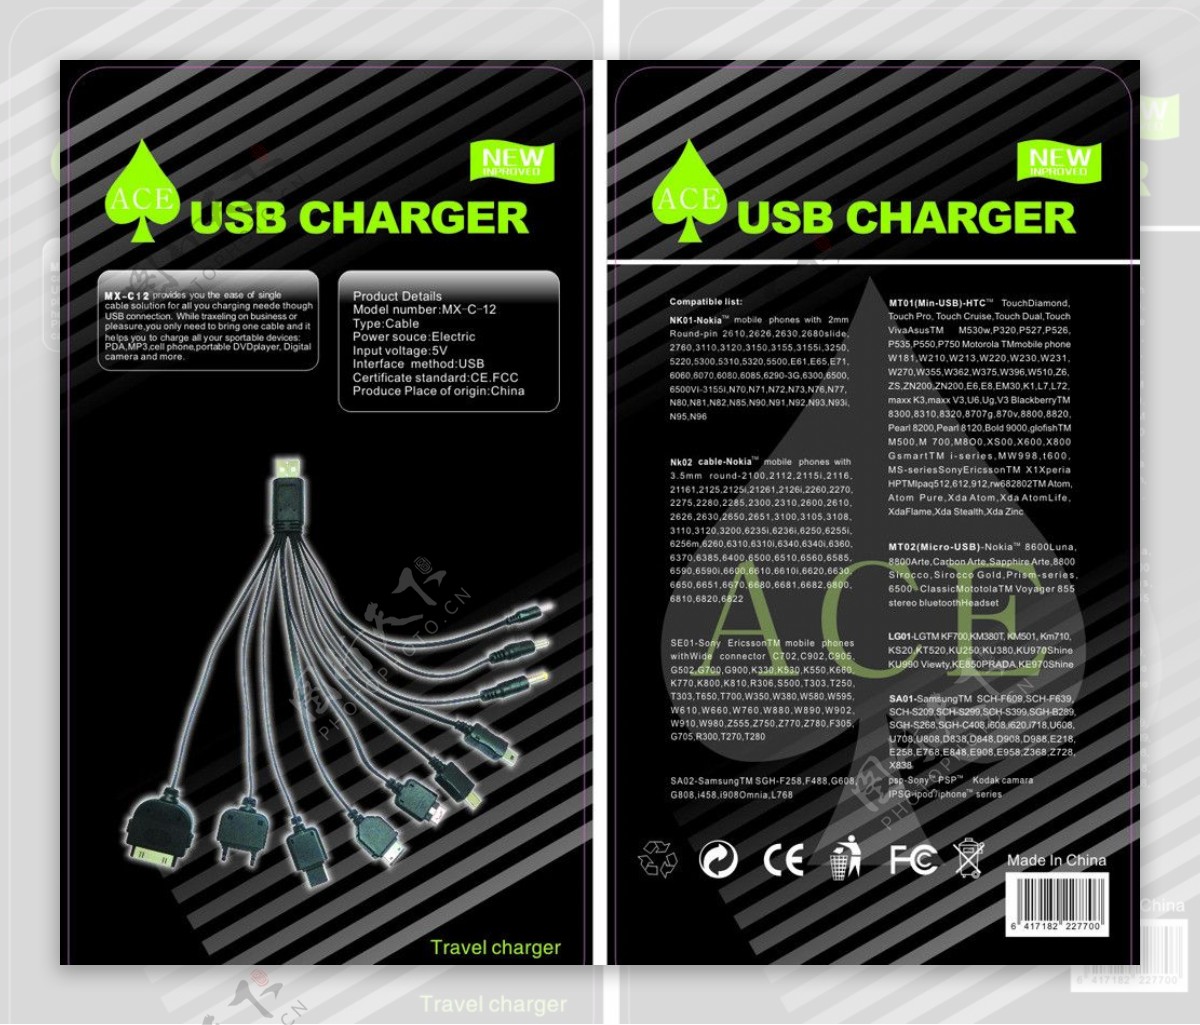 ace纸卡设计logo时尚花纹充电器数据线接口图片